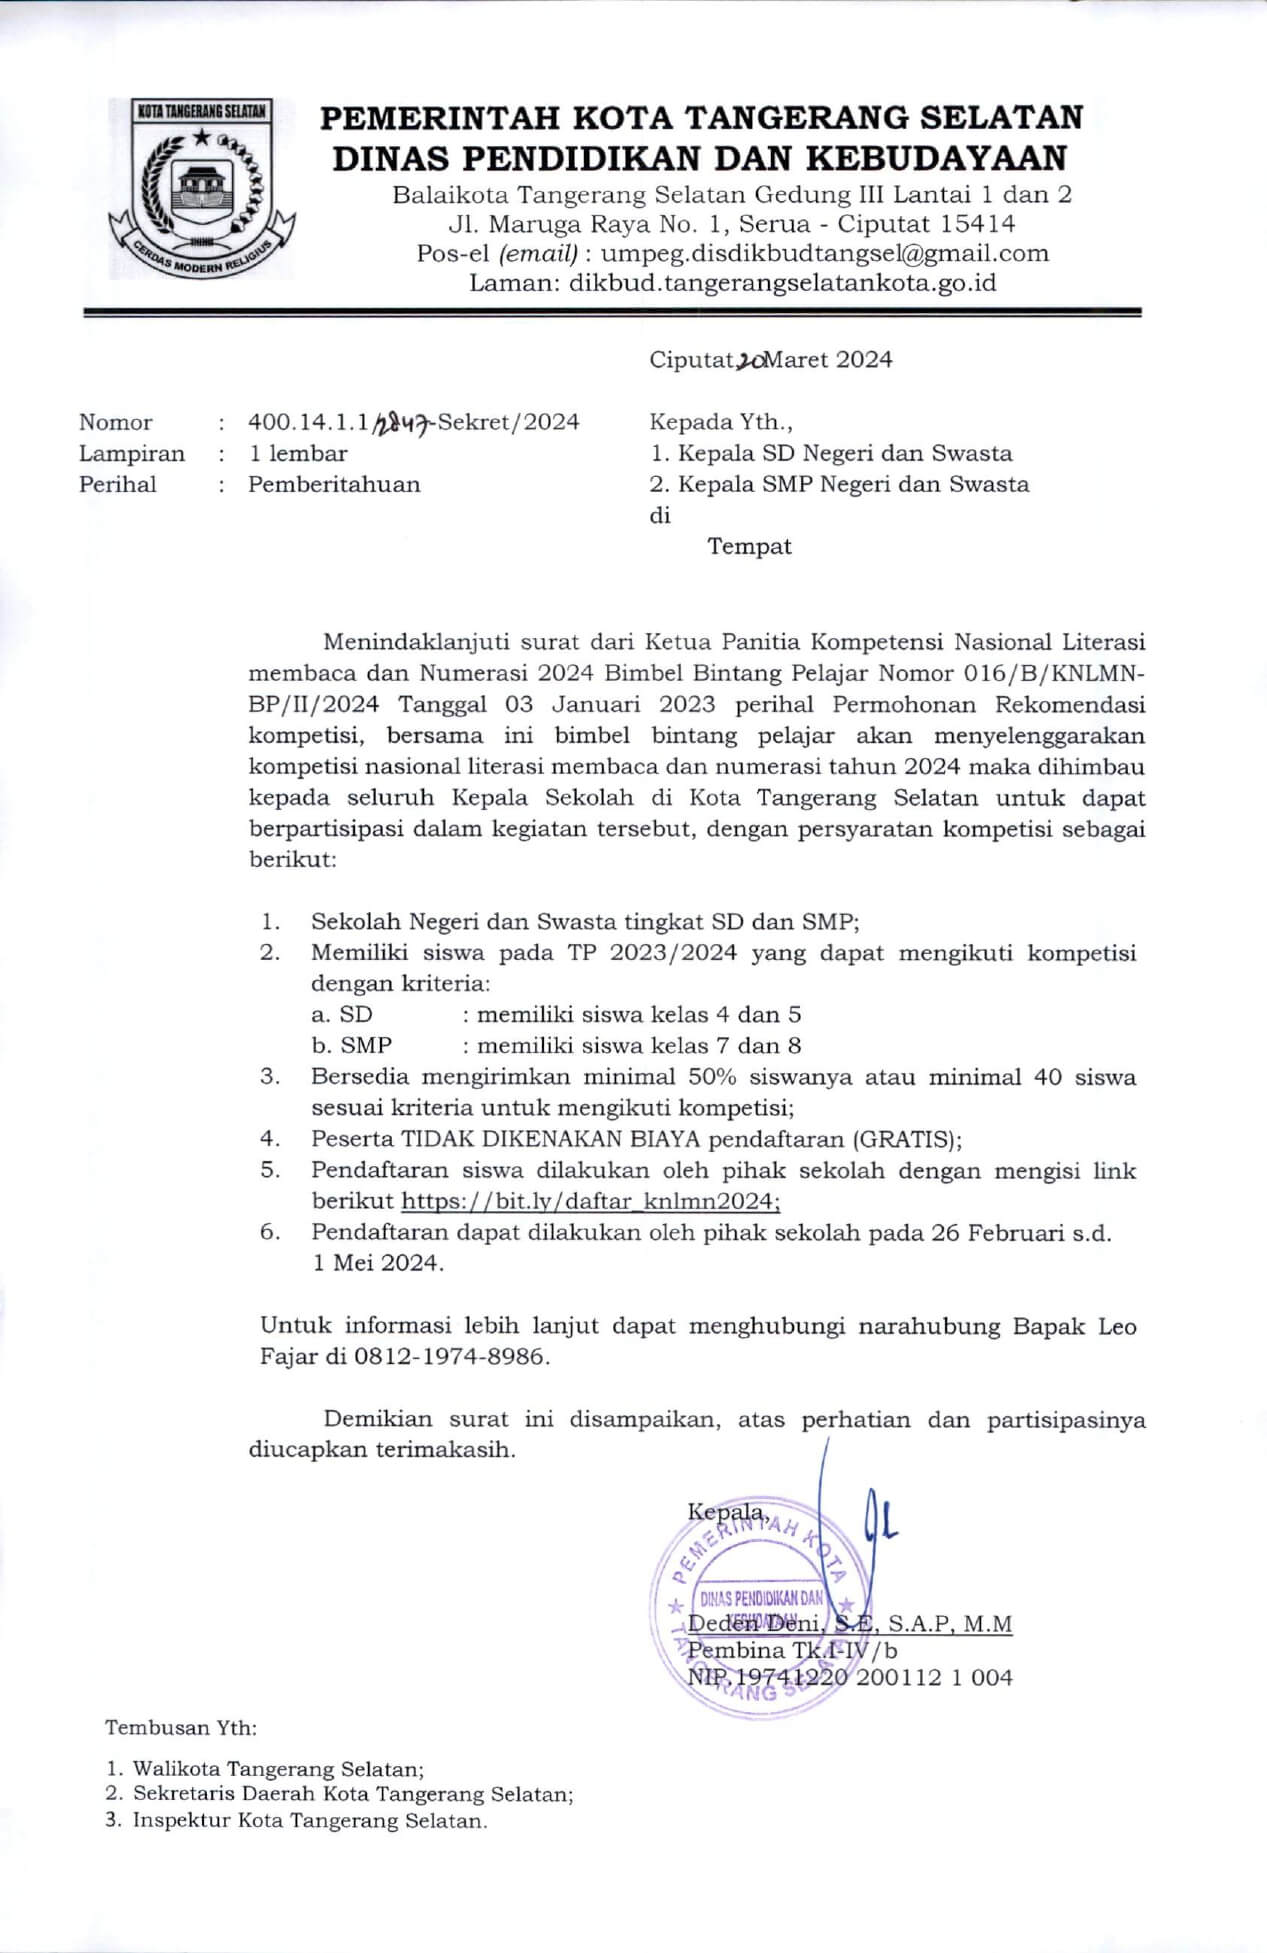 Dikbud Kota Tangsel SD-SMP - Rekomendasi KNLMN 2024